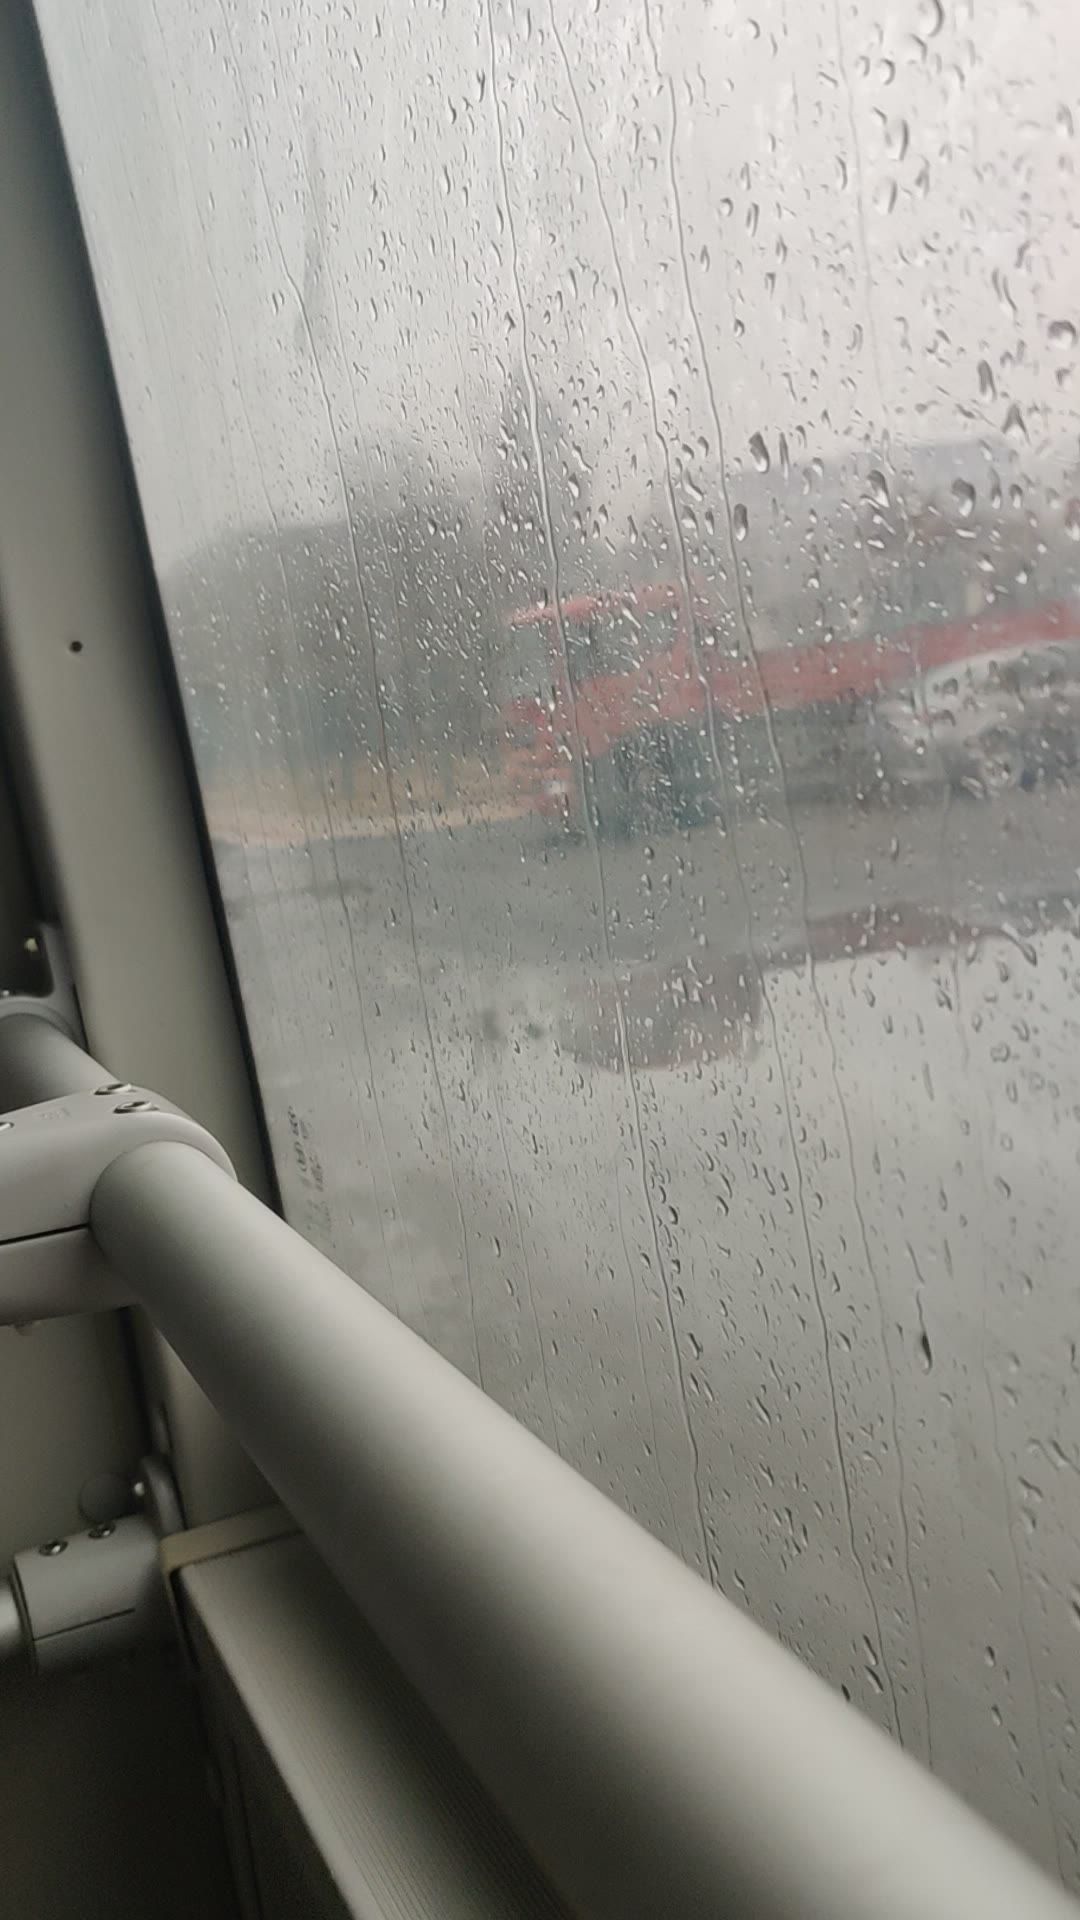 雨天公交车雨滴落在窗户上